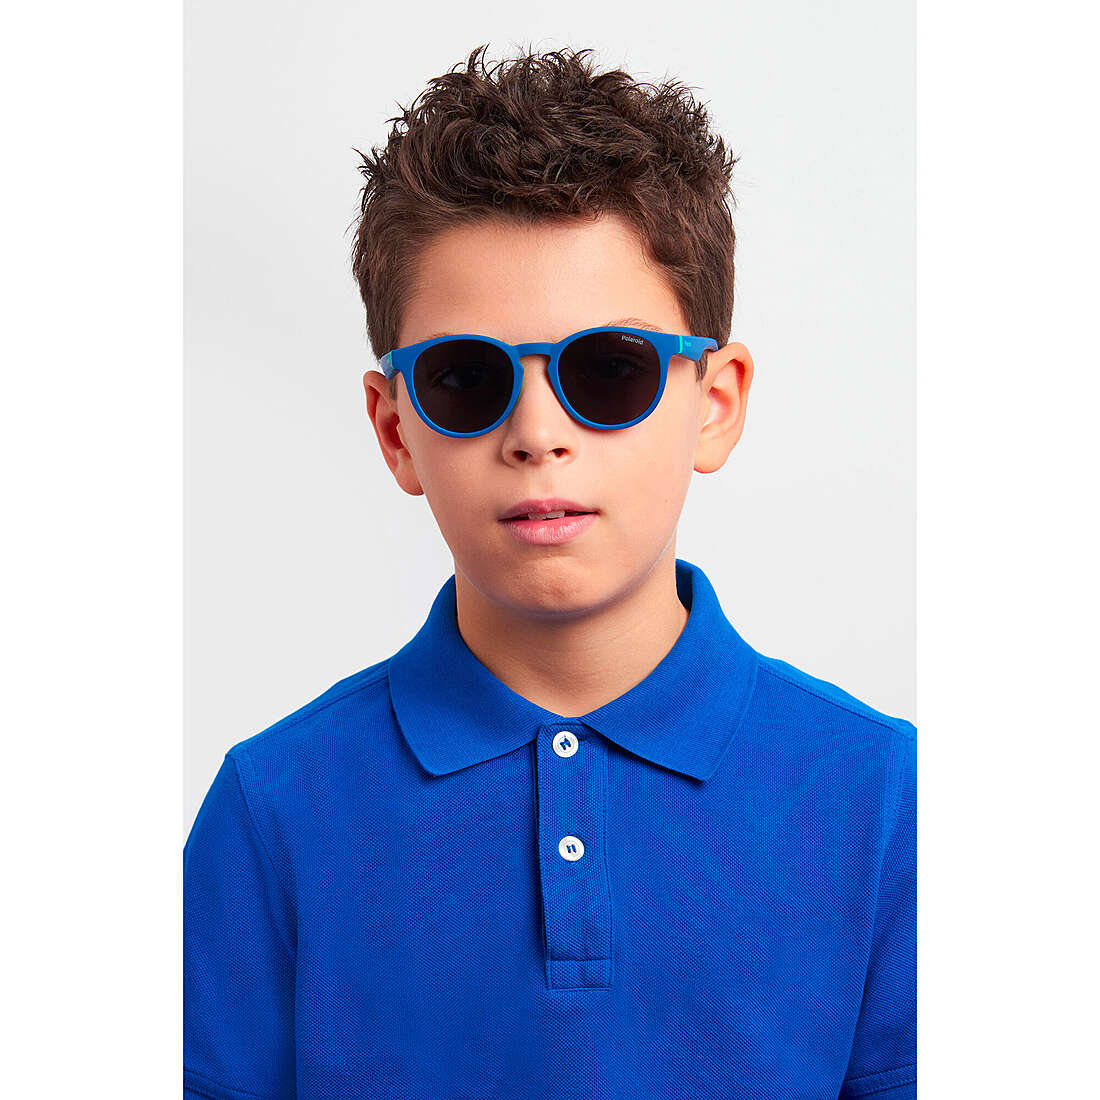 Polaroid occhiali da sole Kids bambino 20487246545M9 indosso